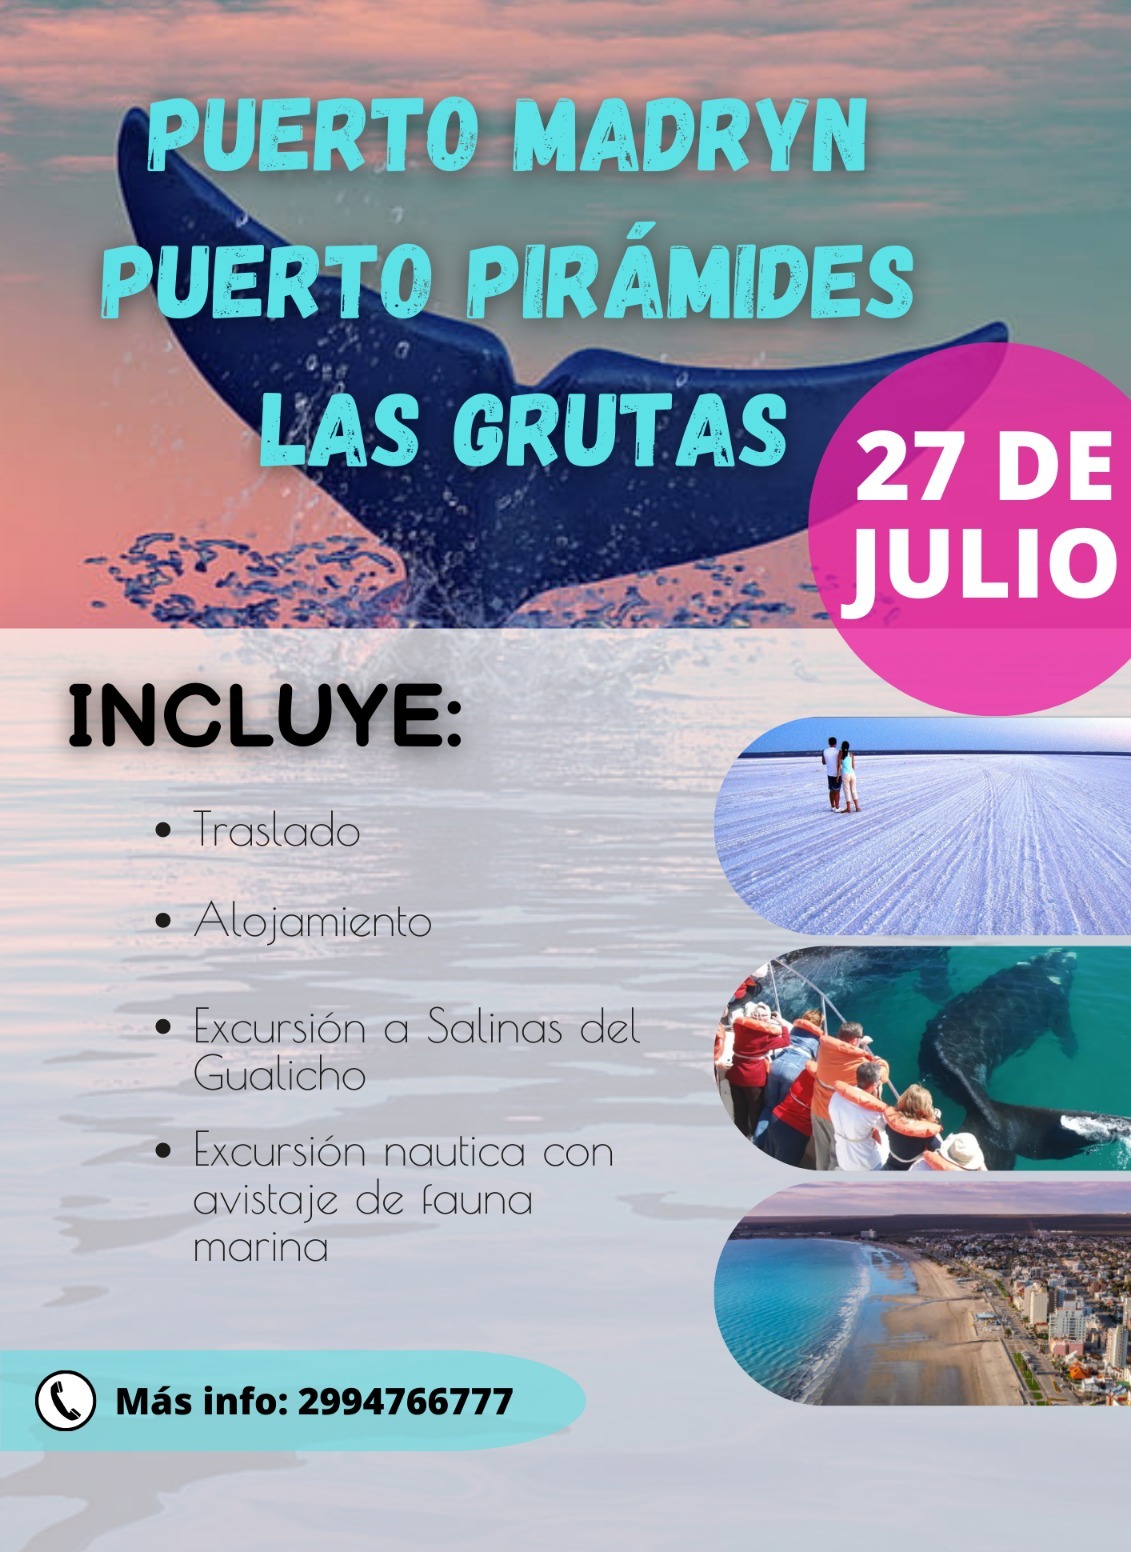 Puerto Piramide Las grutas incluye traslado, alojamiento, excursion a Salinas del Gualicho, excursion nautica con avistaje de fauna marina